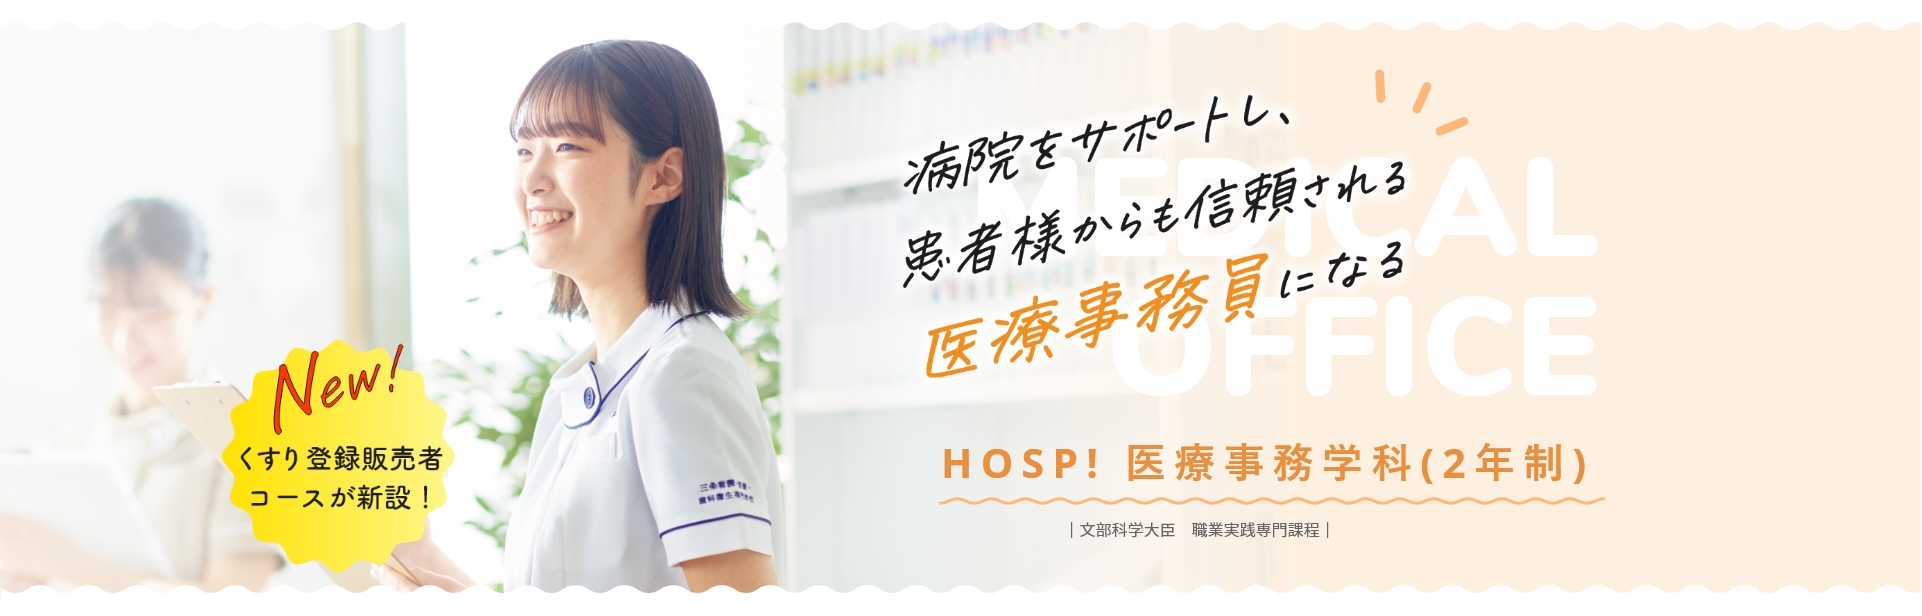 病院をサポートし、患者様からも信頼される医療事務員になる HOSP! 看護学科(3年制)